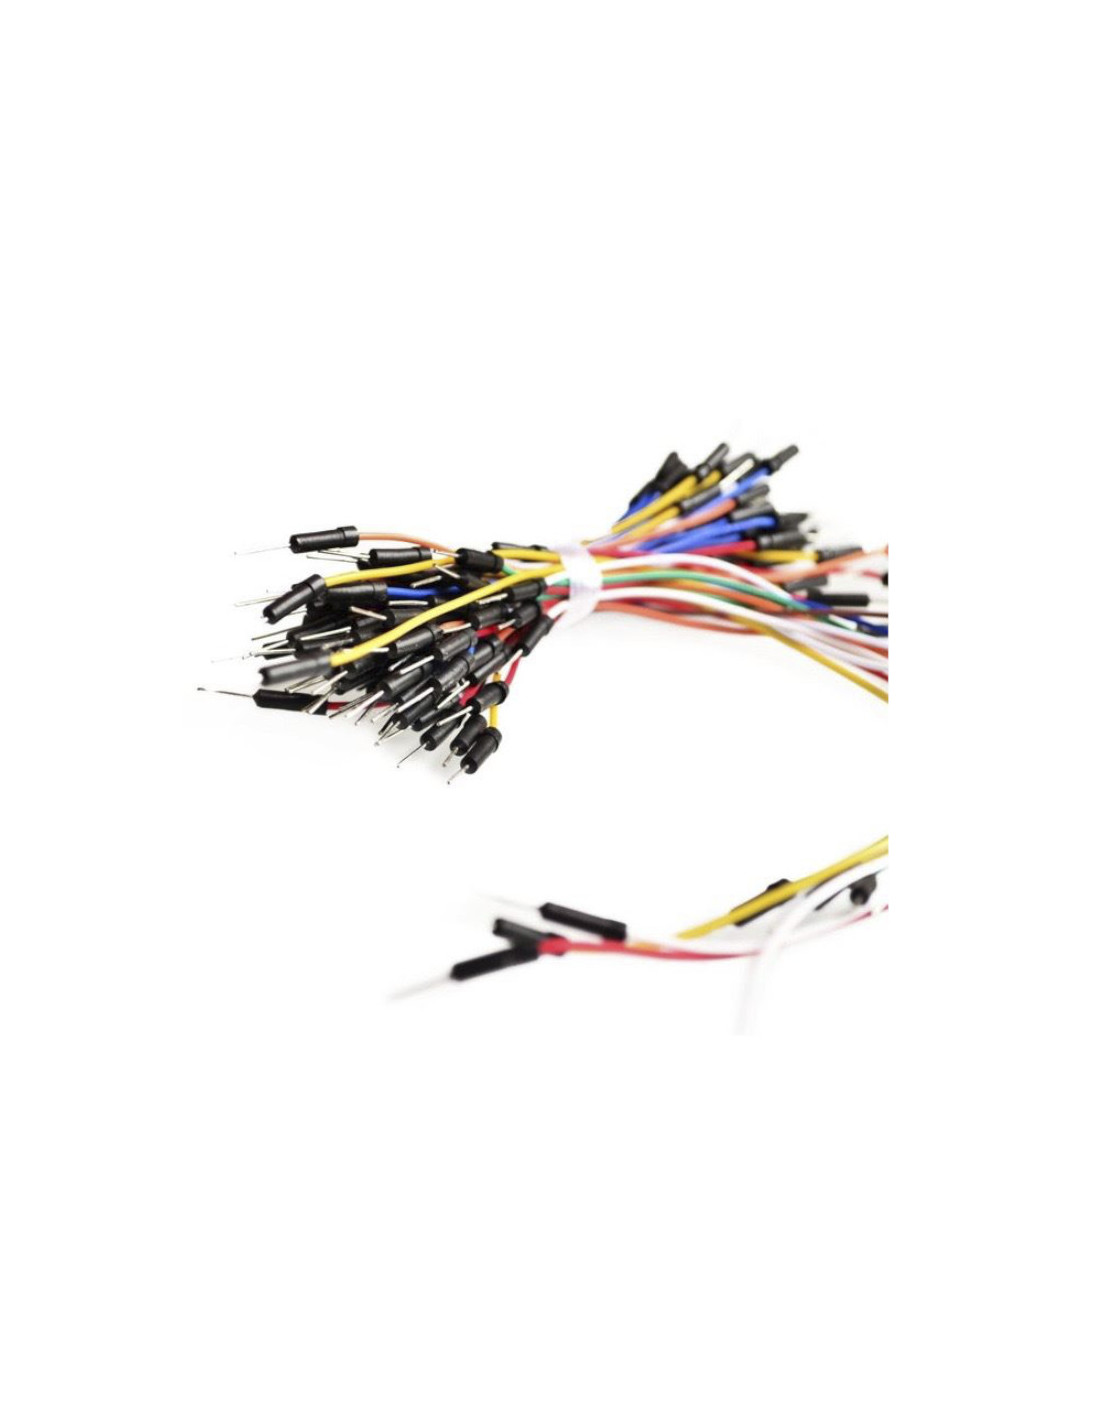 Cables de conexión para protoboard, (65uds)